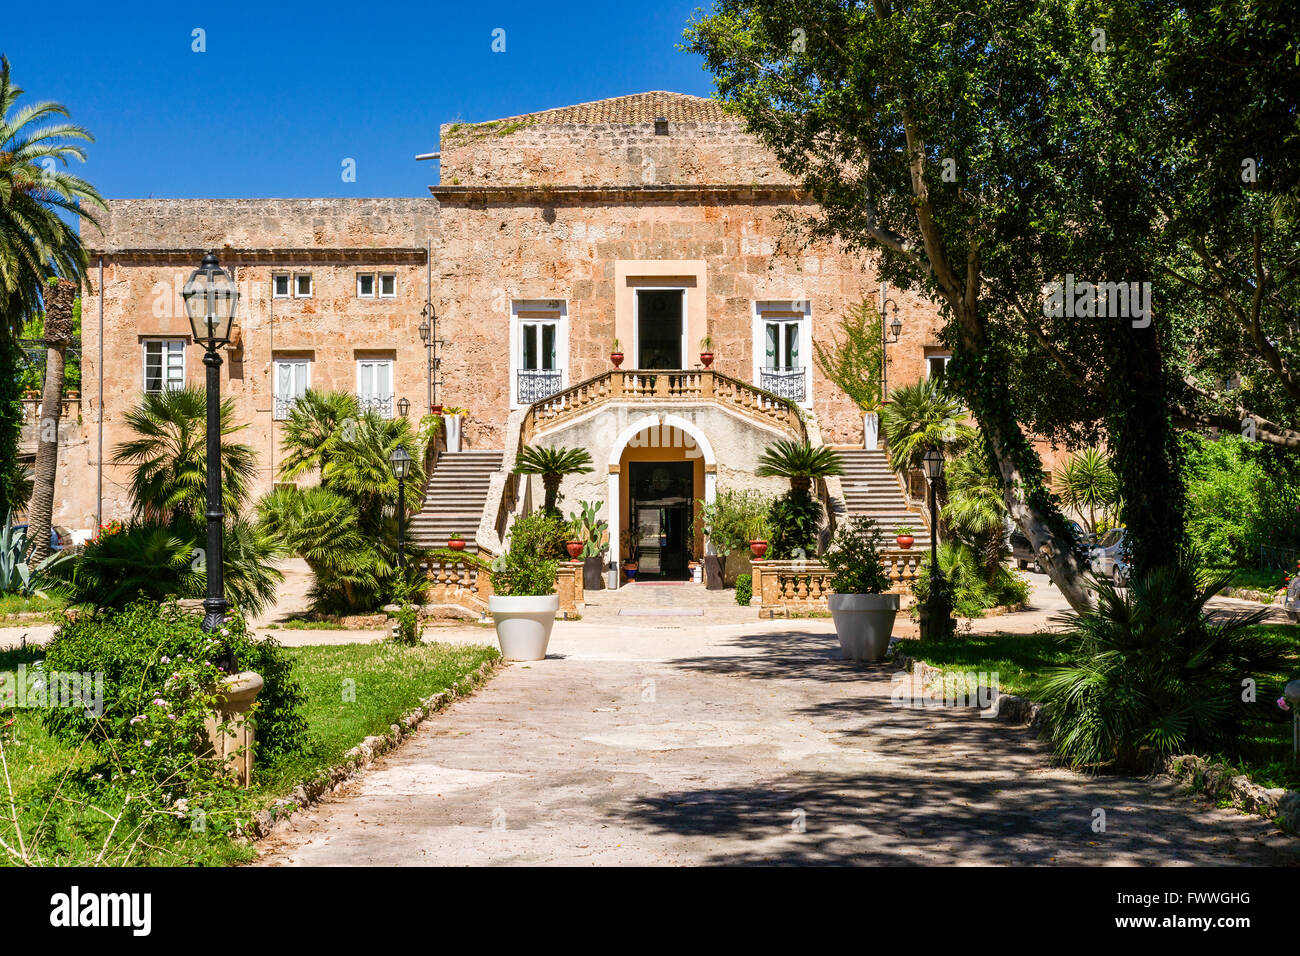 Villa Boscogrande, location of The Leopard or Il Gattopardo by Luchino Visconti, Palermo, Province of Palermo, Sicily, Italy Stock Photo